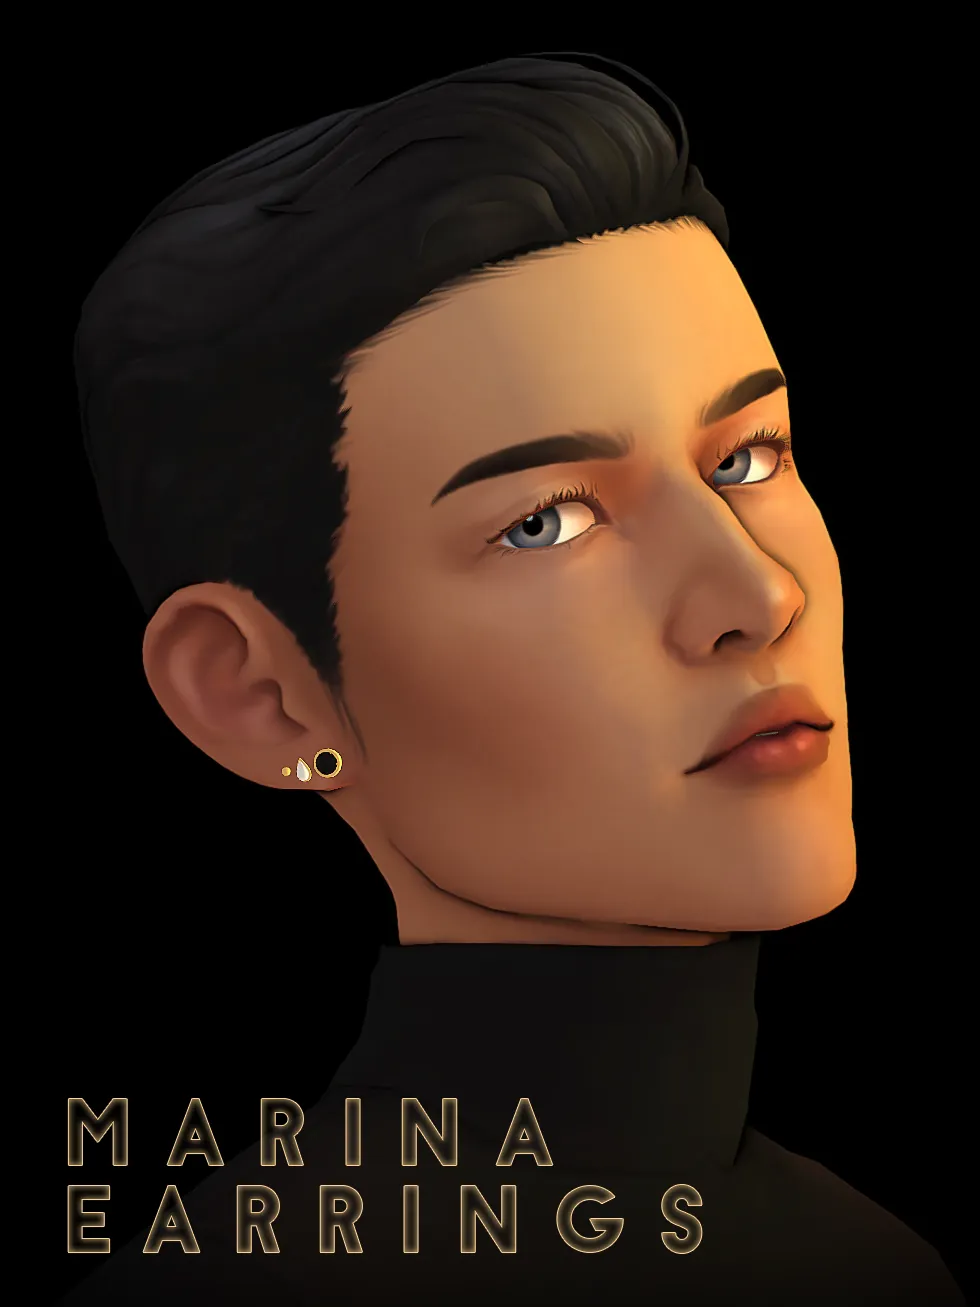 marina earrings